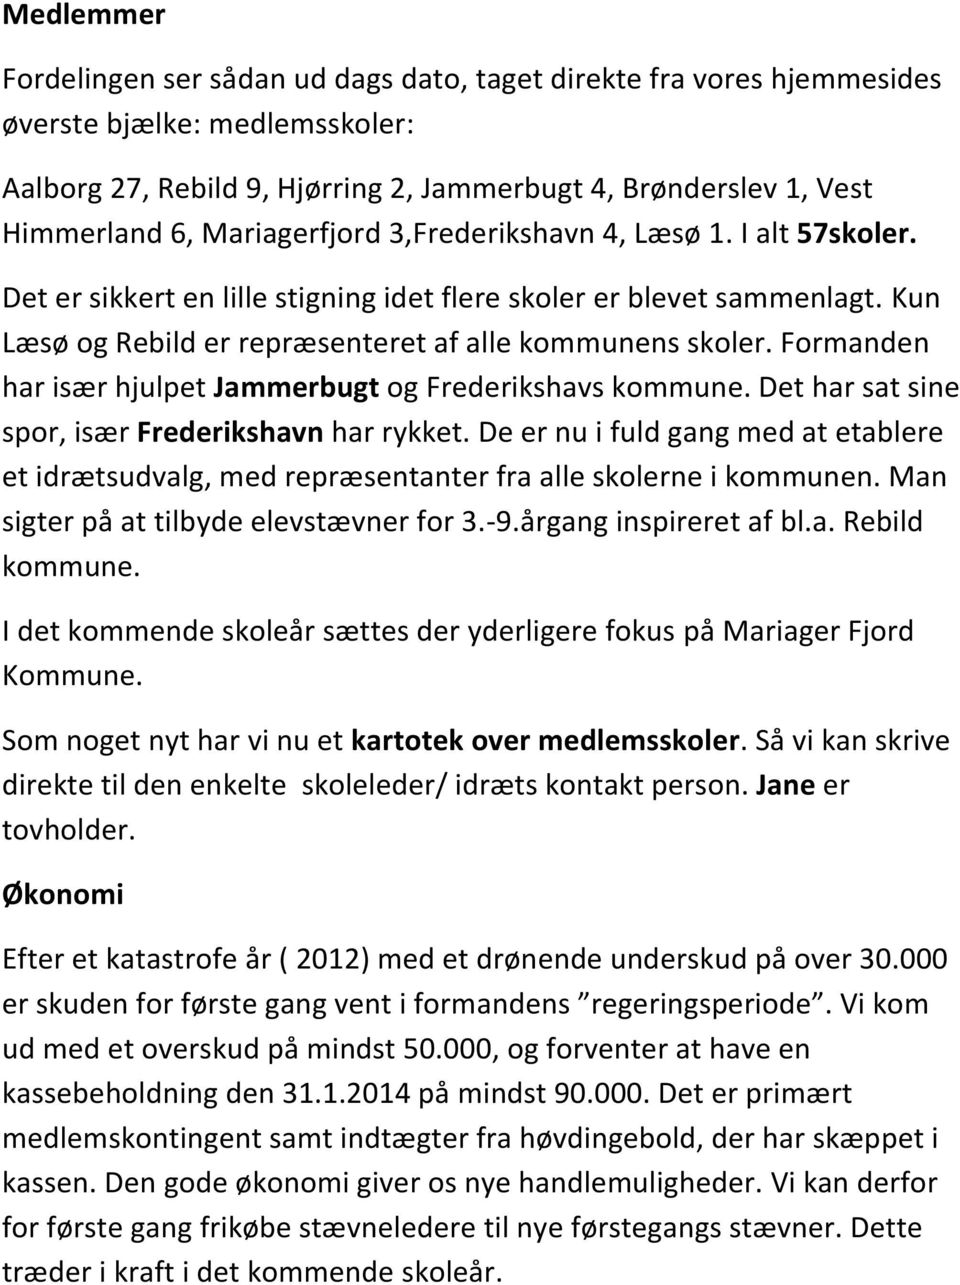 Formanden har især hjulpet Jammerbugt og Frederikshavs kommune. Det har sat sine spor, især Frederikshavn har rykket.